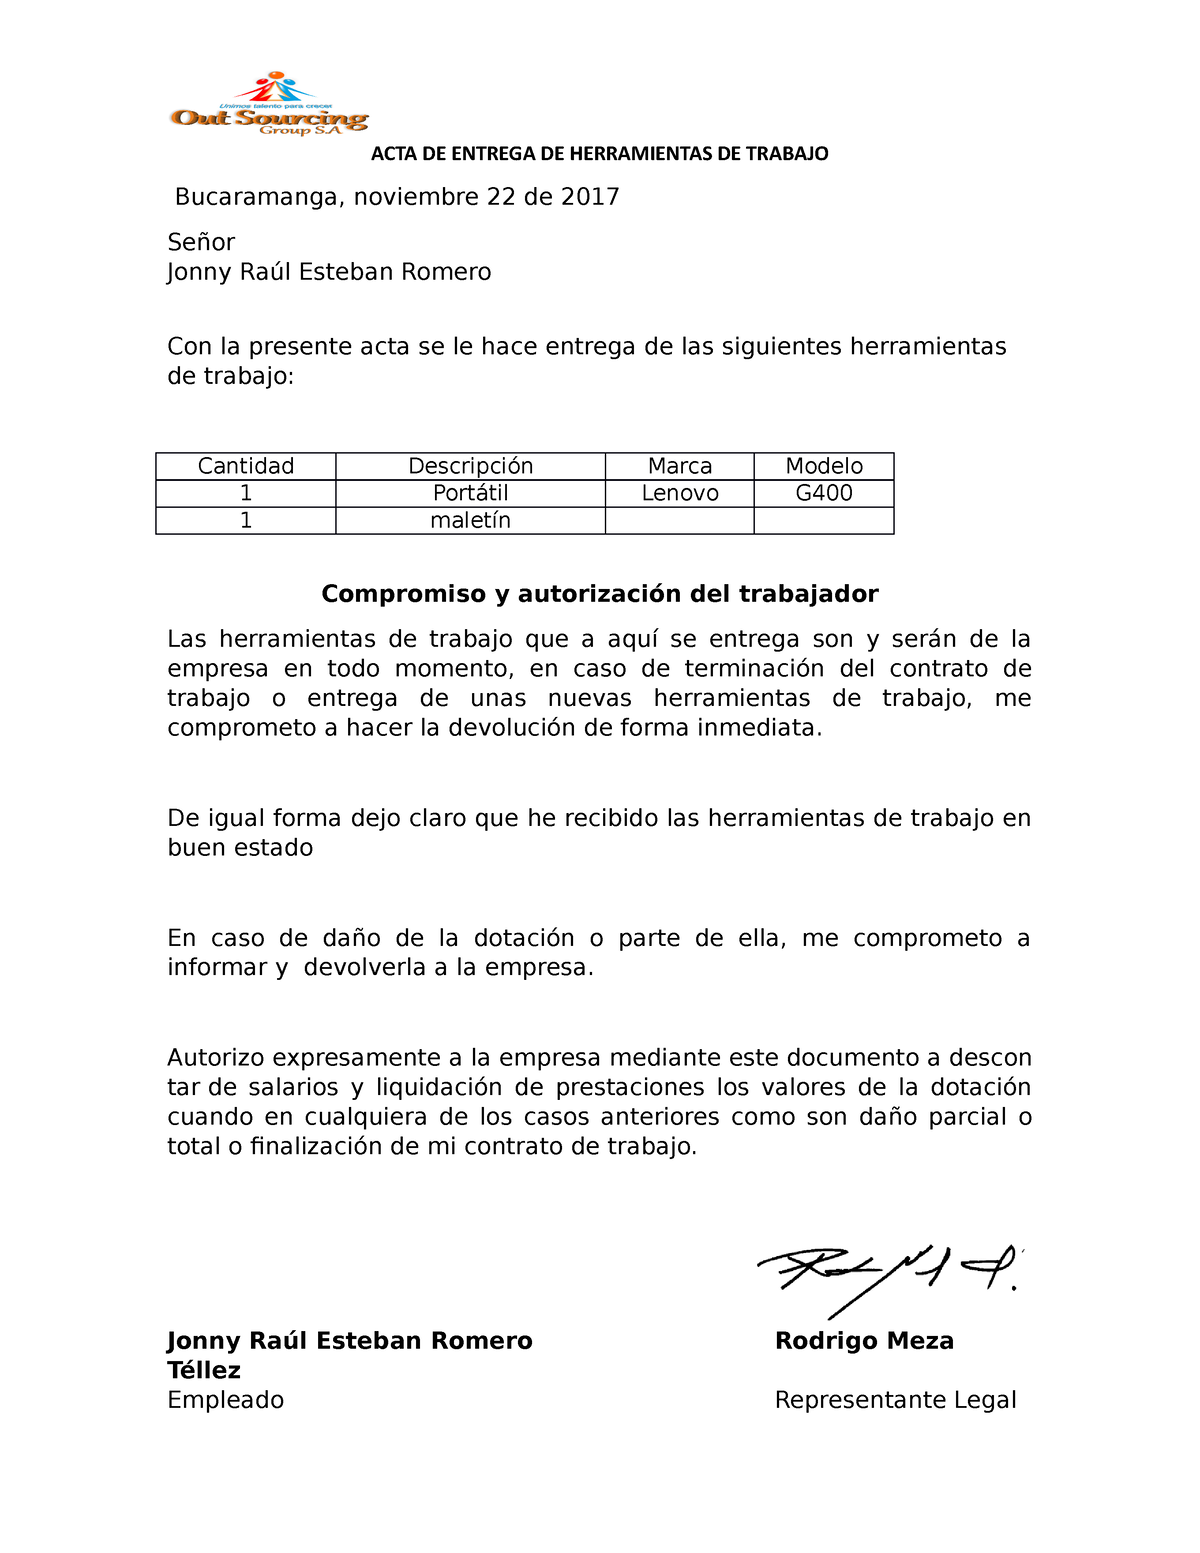 Acta De Entrega De Equipos Acta De Entrega De Herramientas De Trabajo Bucaramanga Noviembre